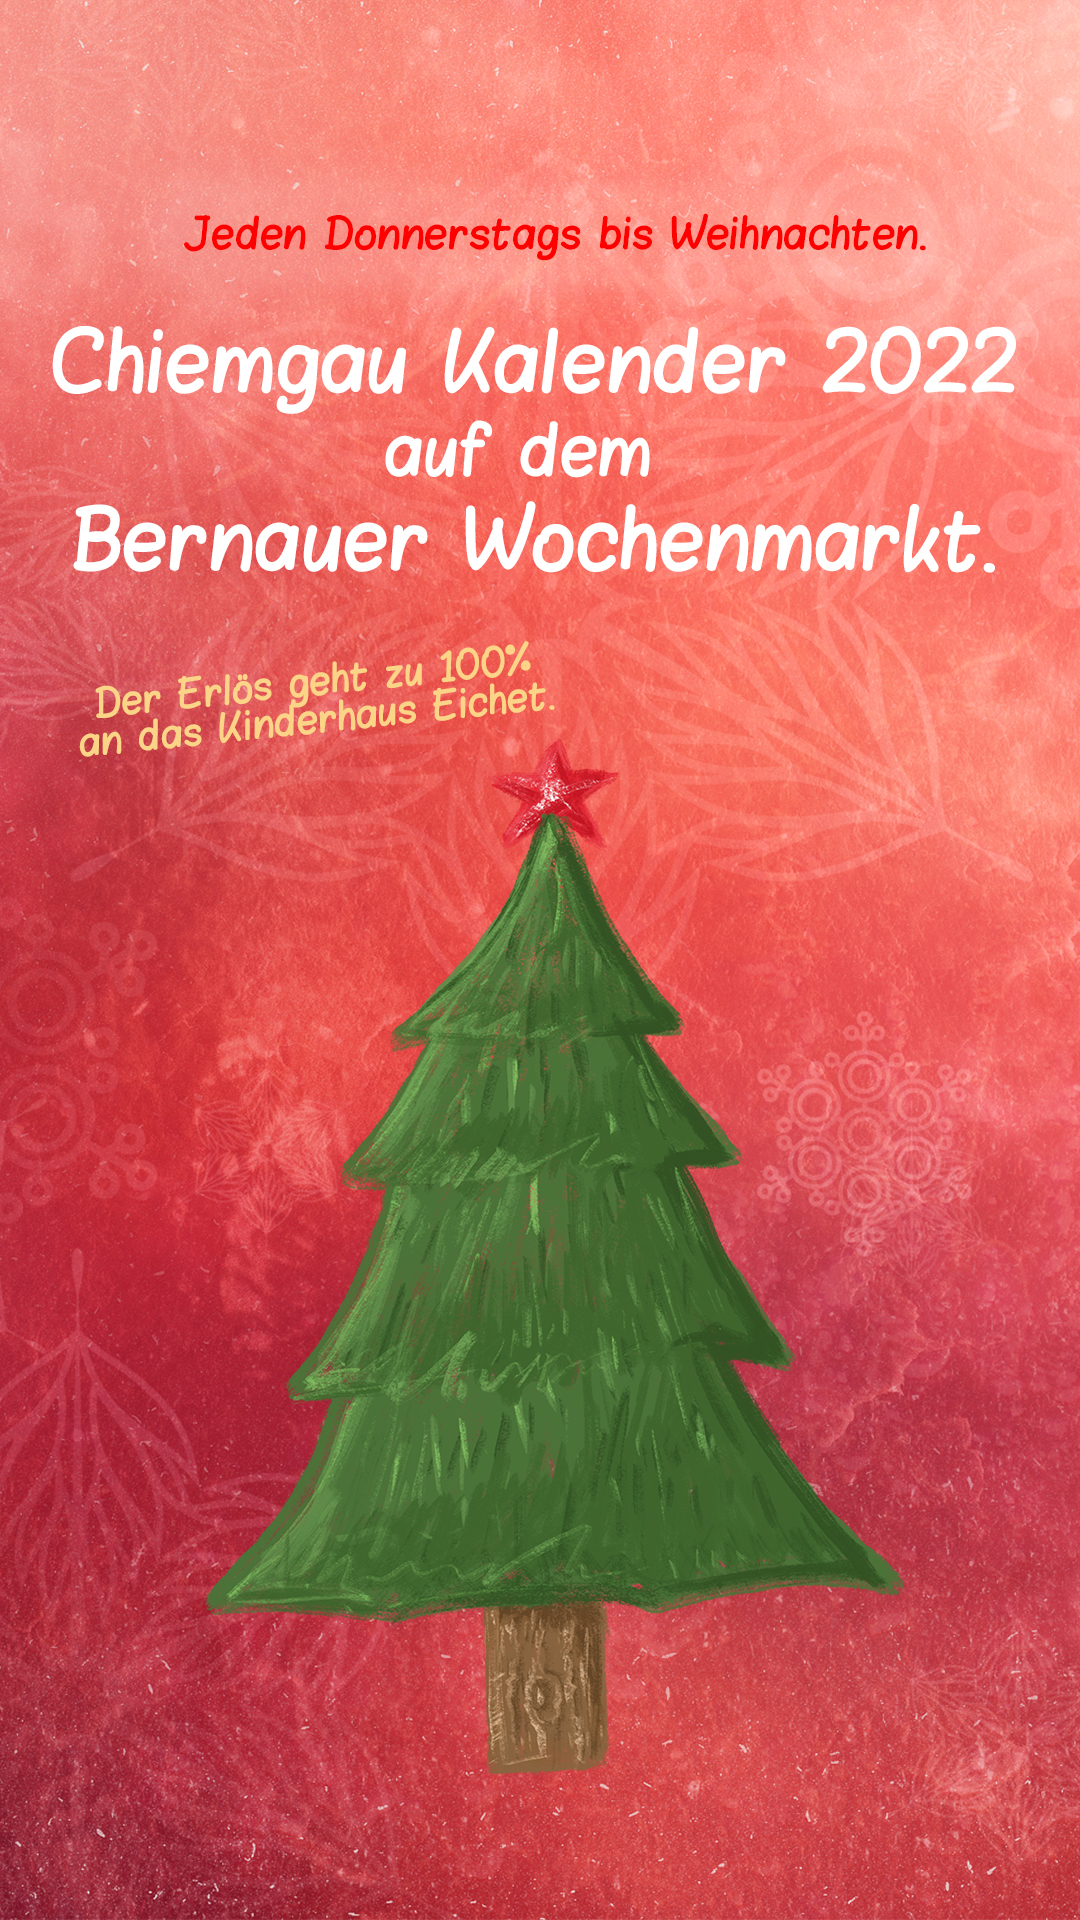 Chiemgau Kalender 2022 auf dem Wochenmarkt in Bernau 1